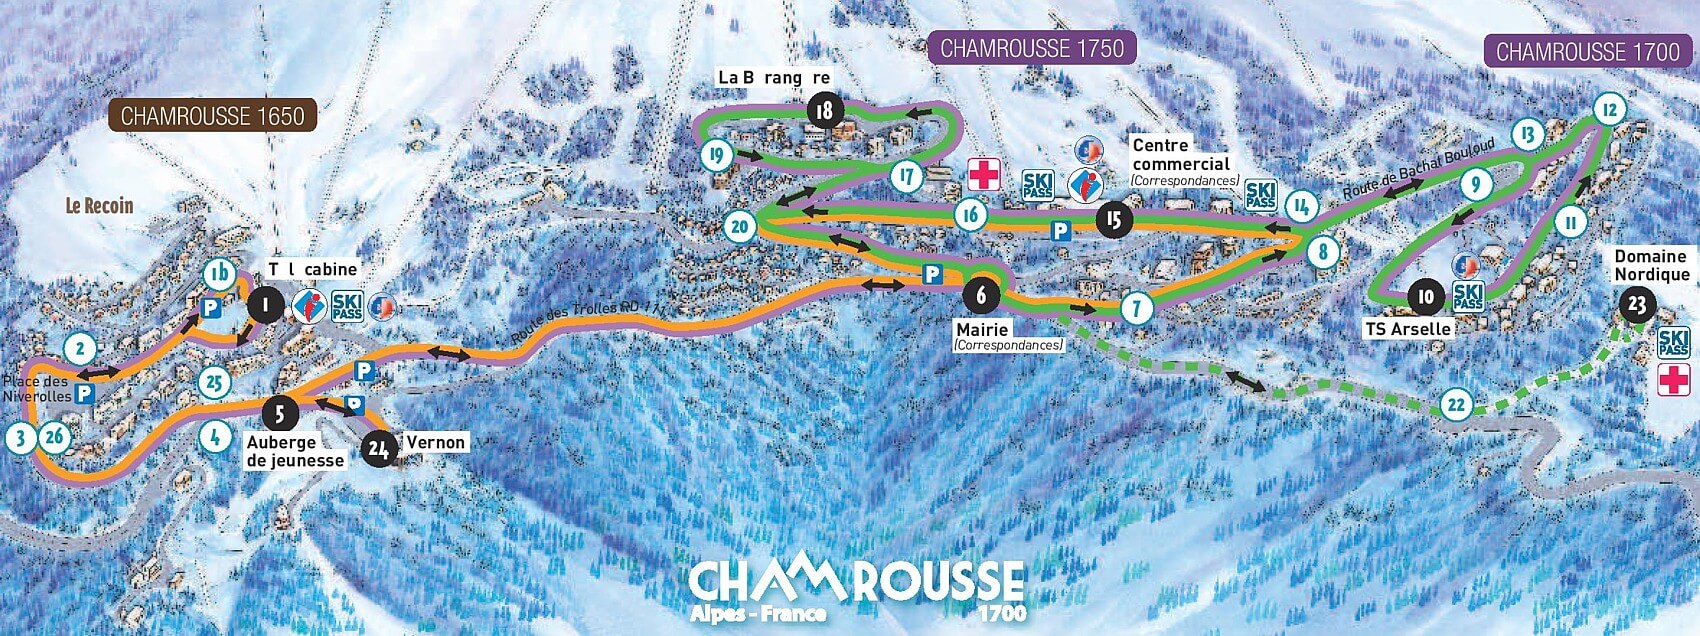 ski-bus-plan-chamrousse